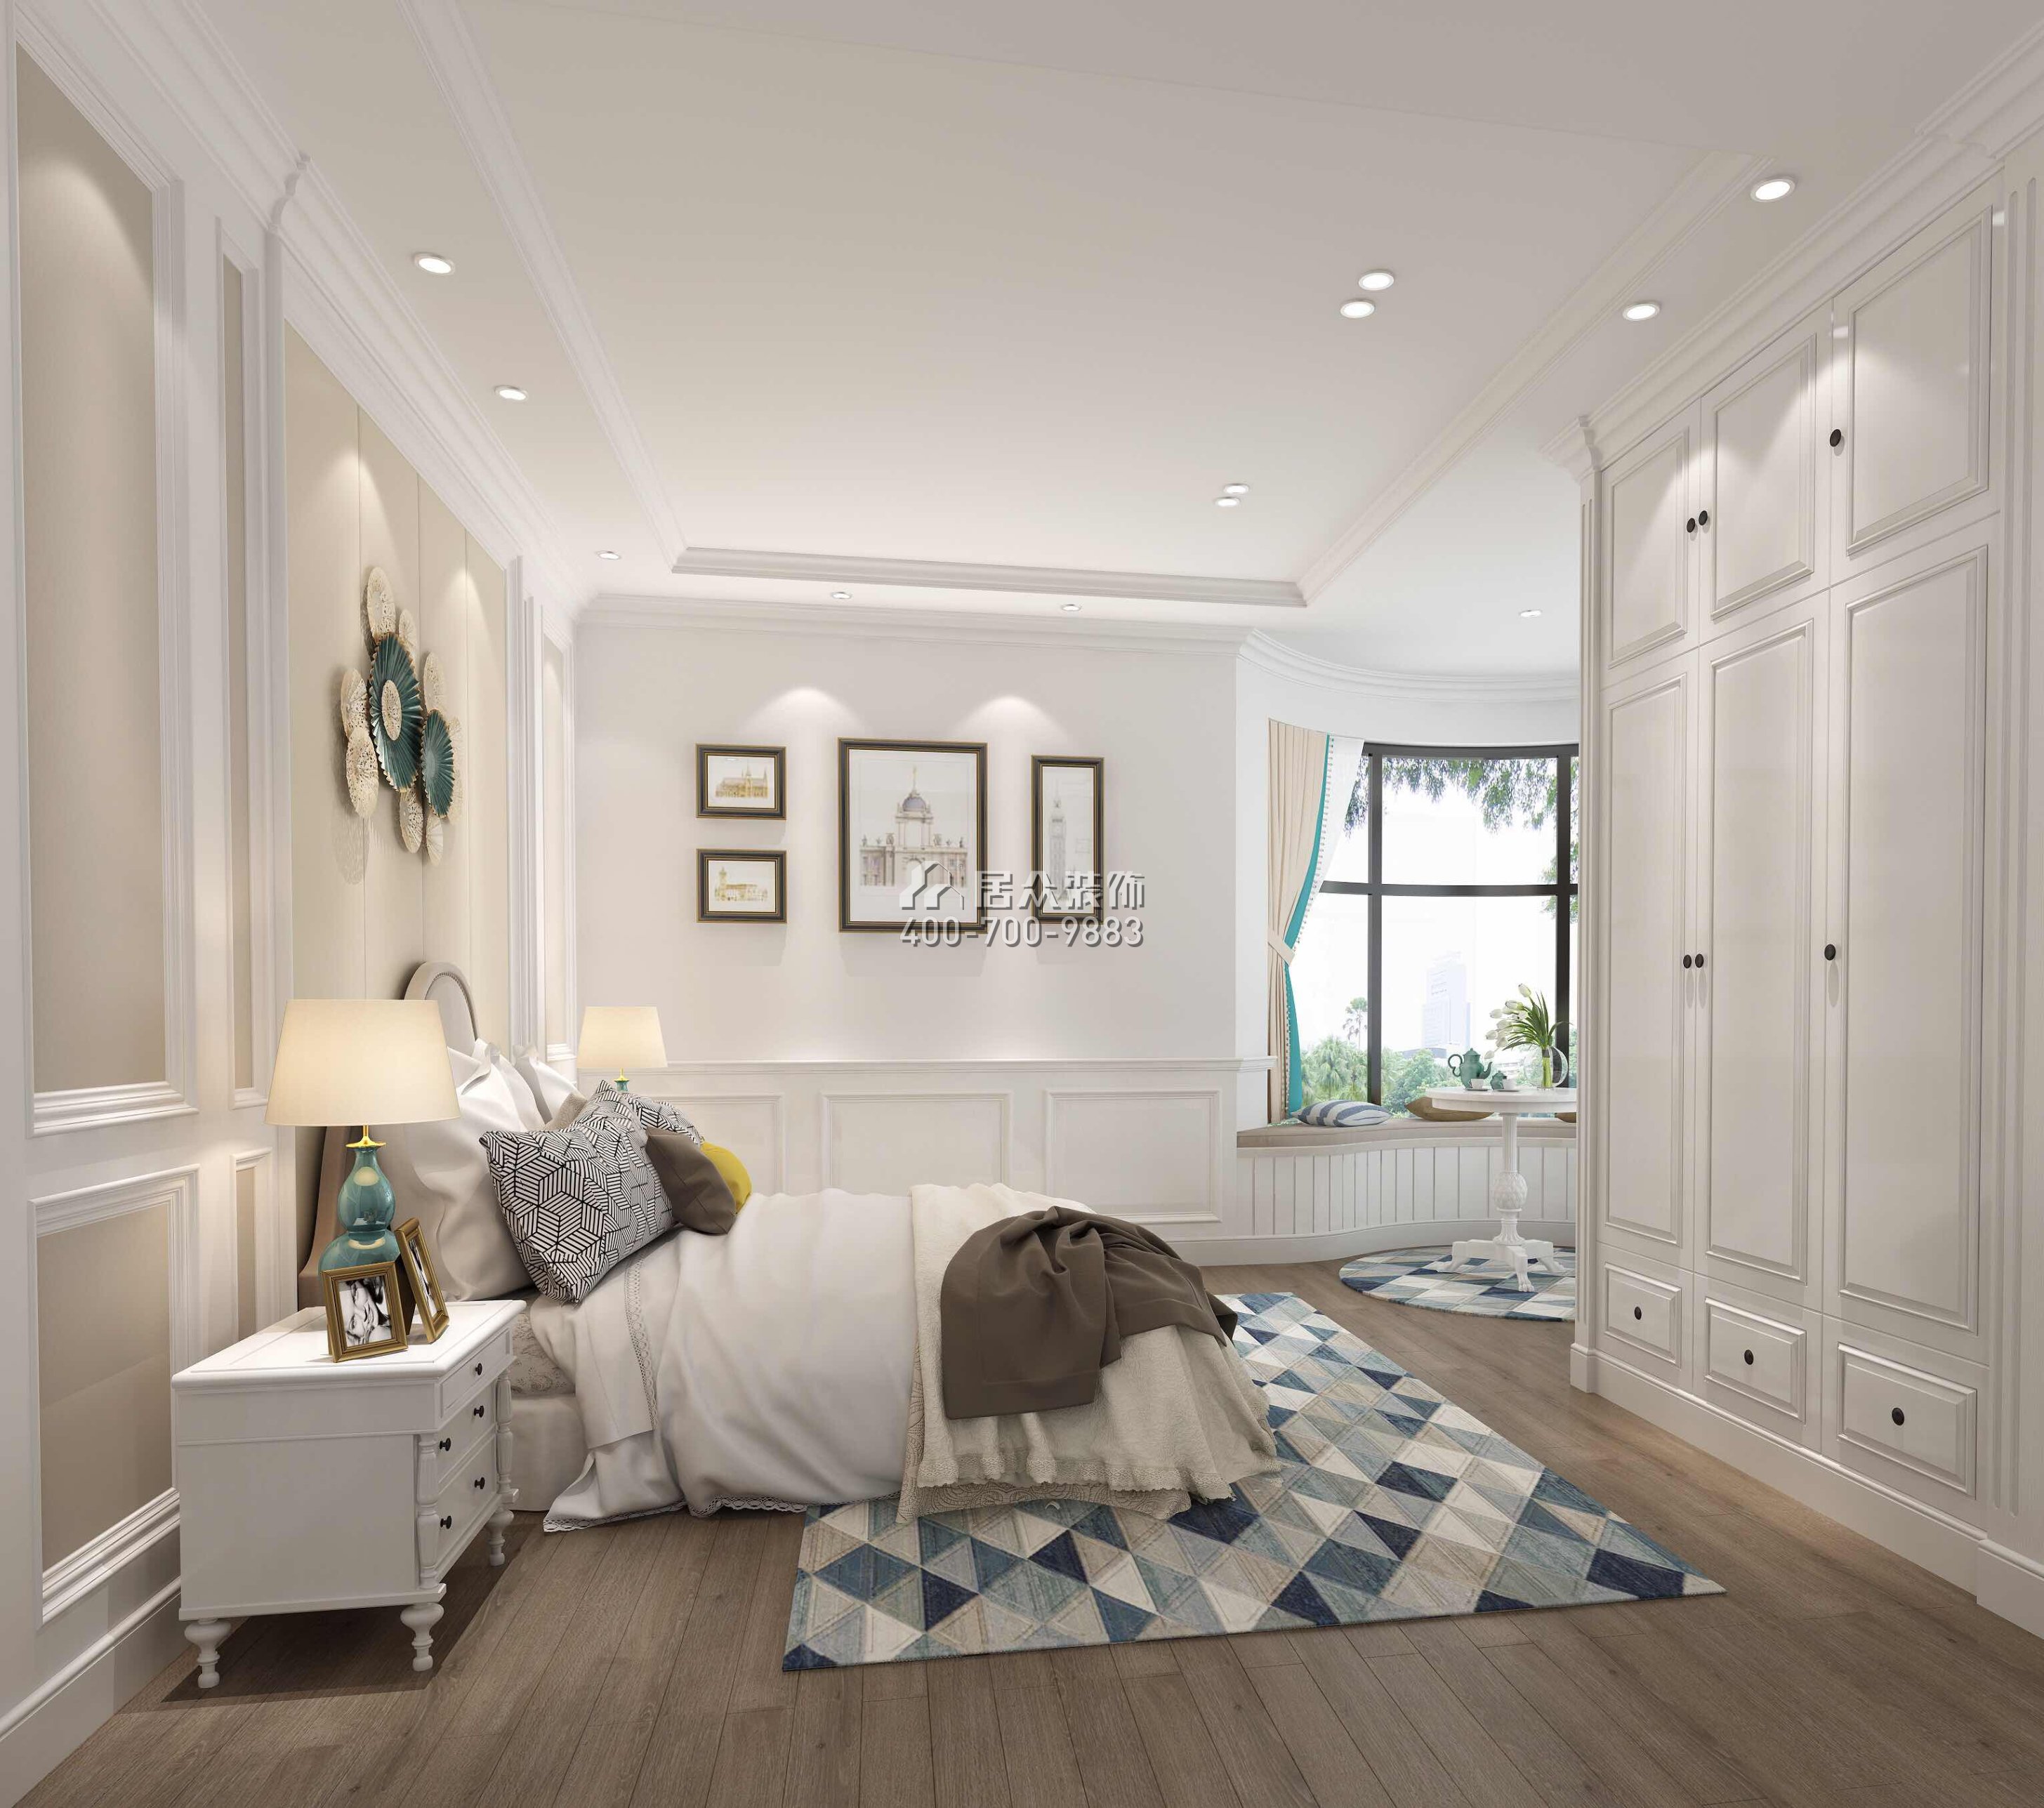 星河传说聚星岛110平方米美式风格平层户型卧室装修效果图